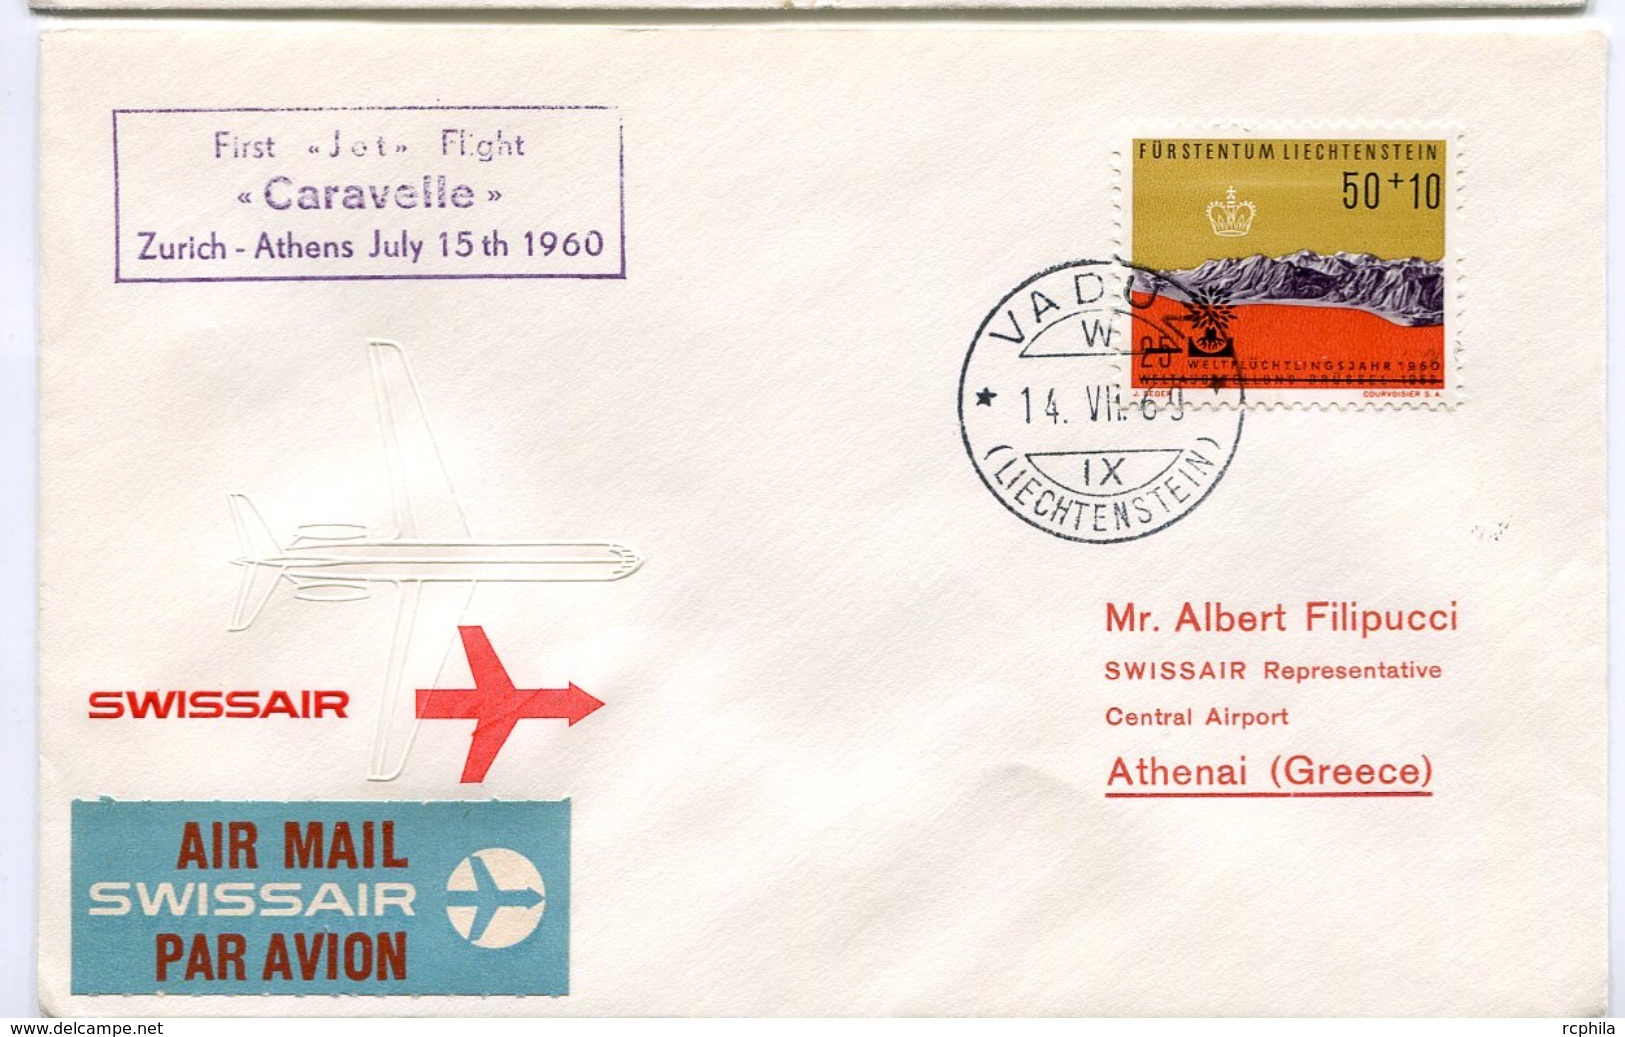 RC 6637 SUISSE 1960 1er VOL SWISSAIR ZURICH - ATHENS GRECE CARAVELLE LIECHTENSTEIN FFC LETTRE COVER - Eerste Vluchten